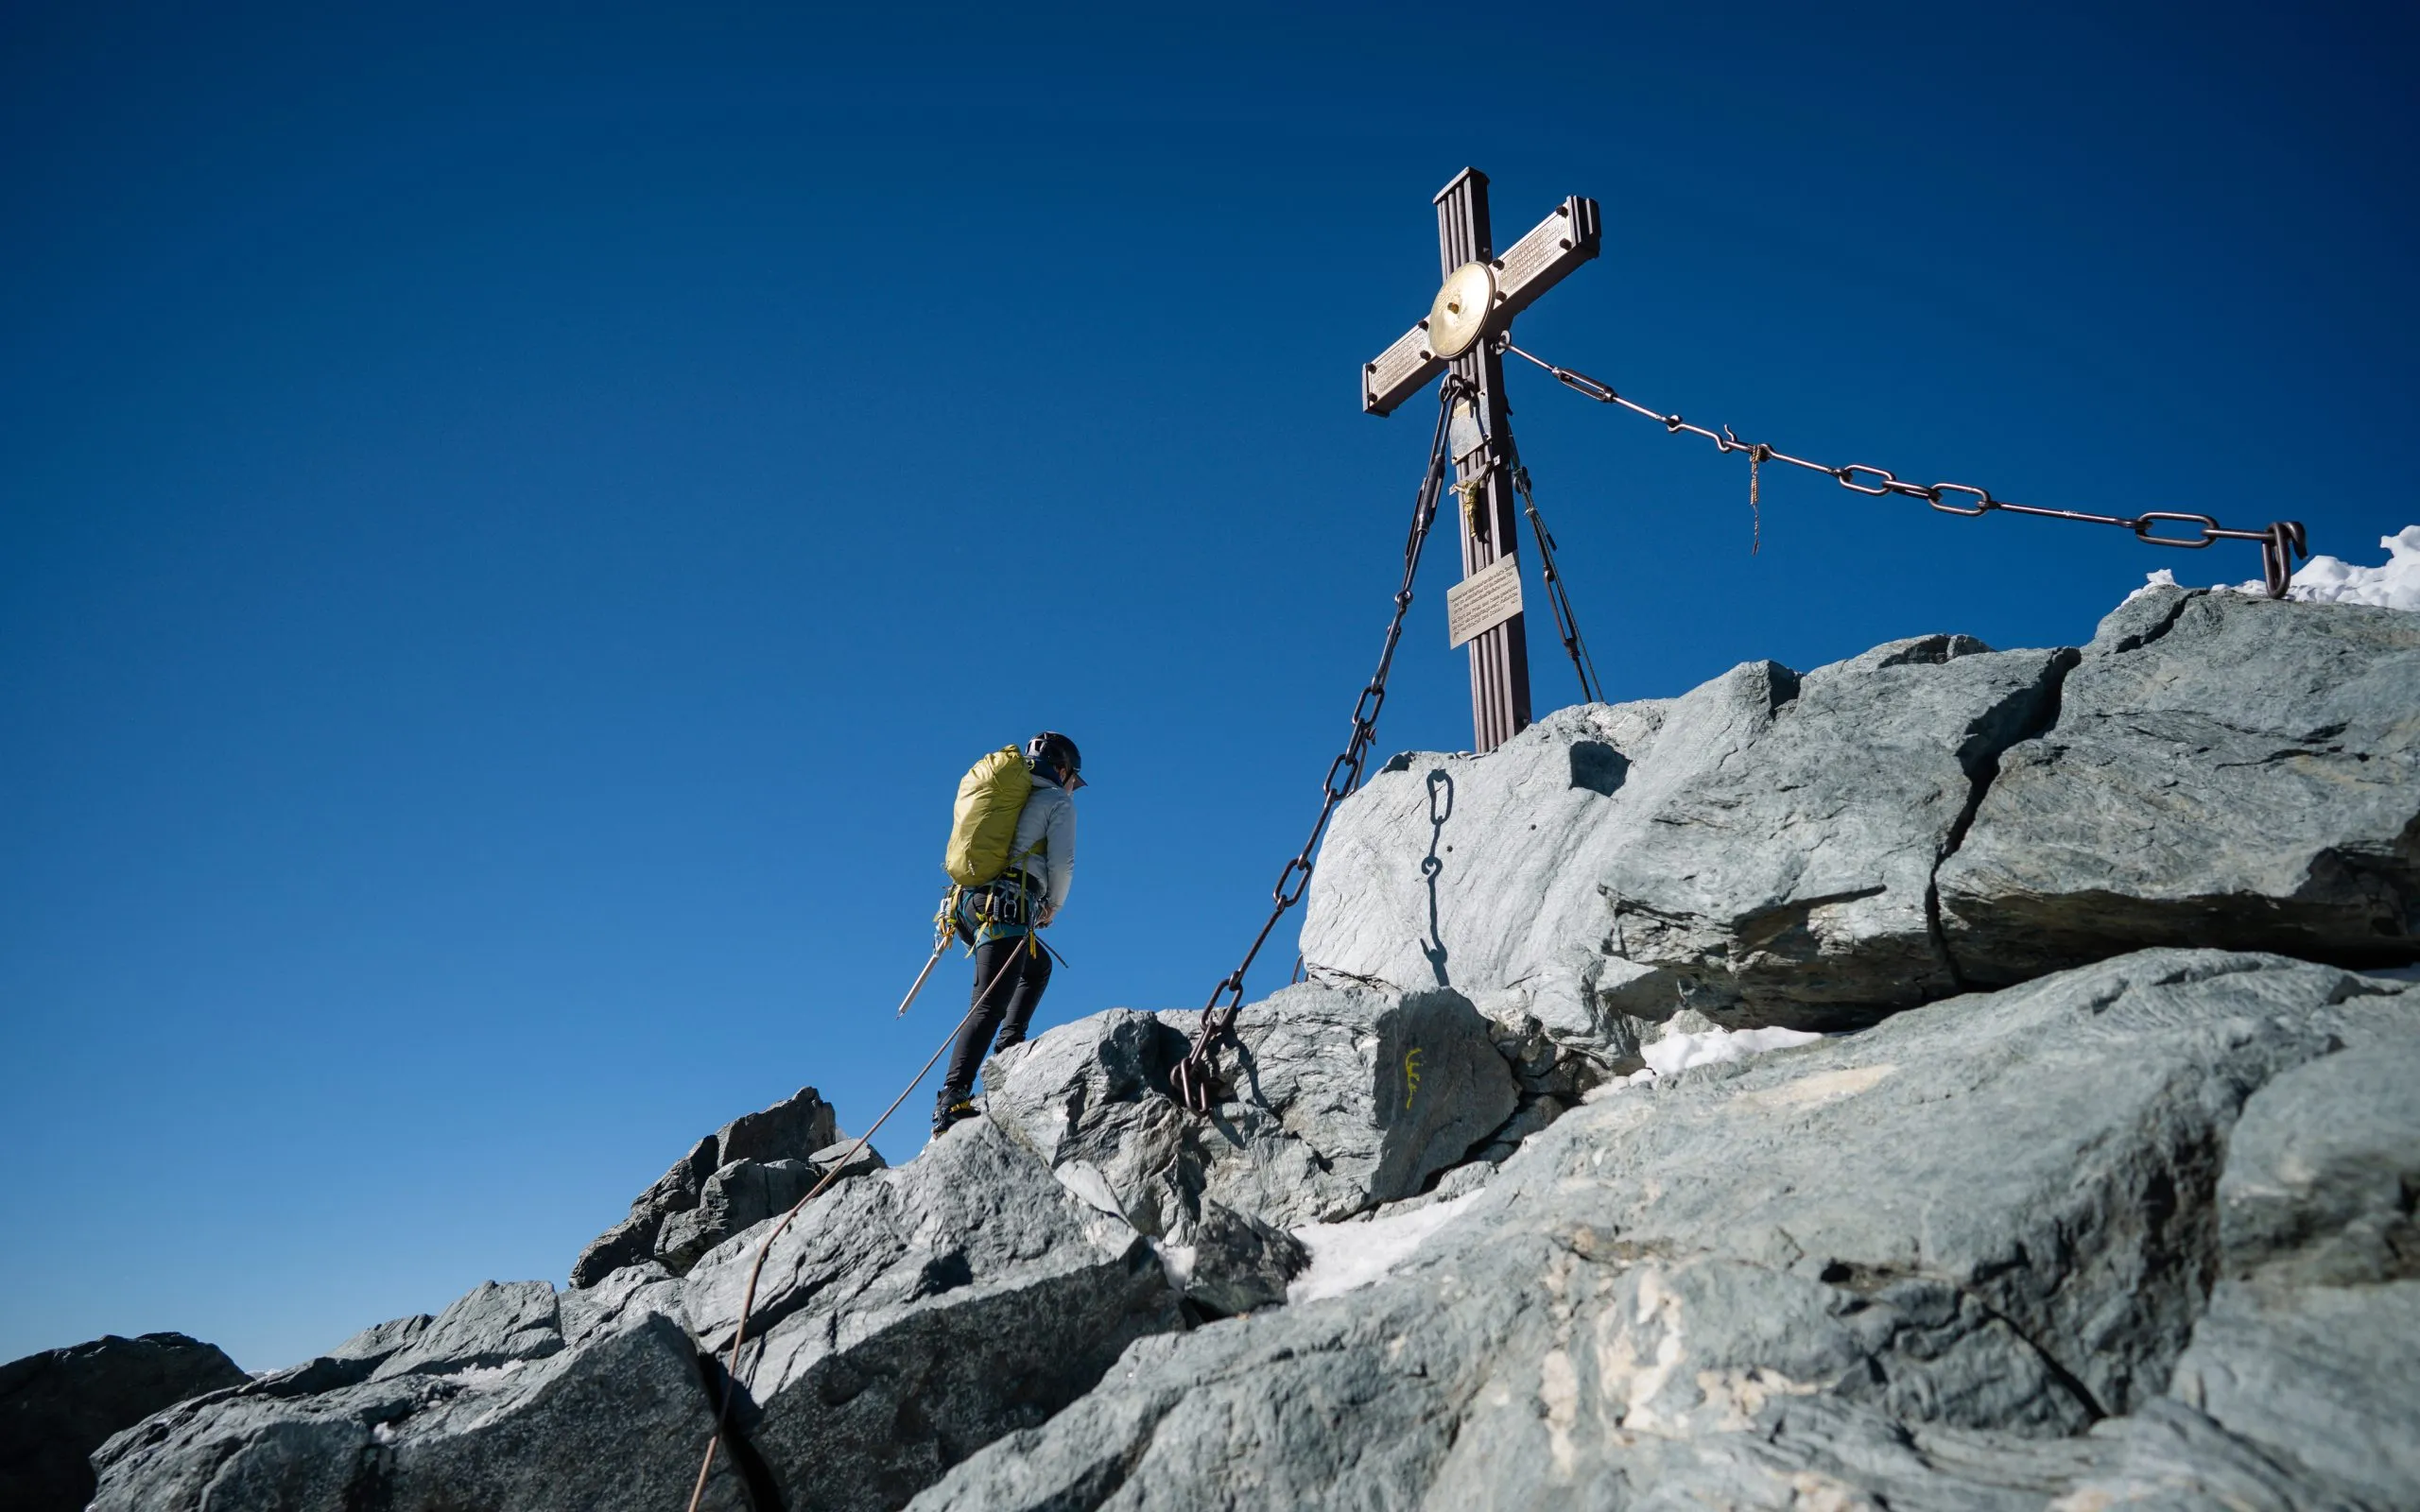 Žena v turistickém oblečení dosahuje kříže na Grossglockneru, nejvyšší hoře Rakouska. Jasný den. Úspěch. Dívka na vrcholu